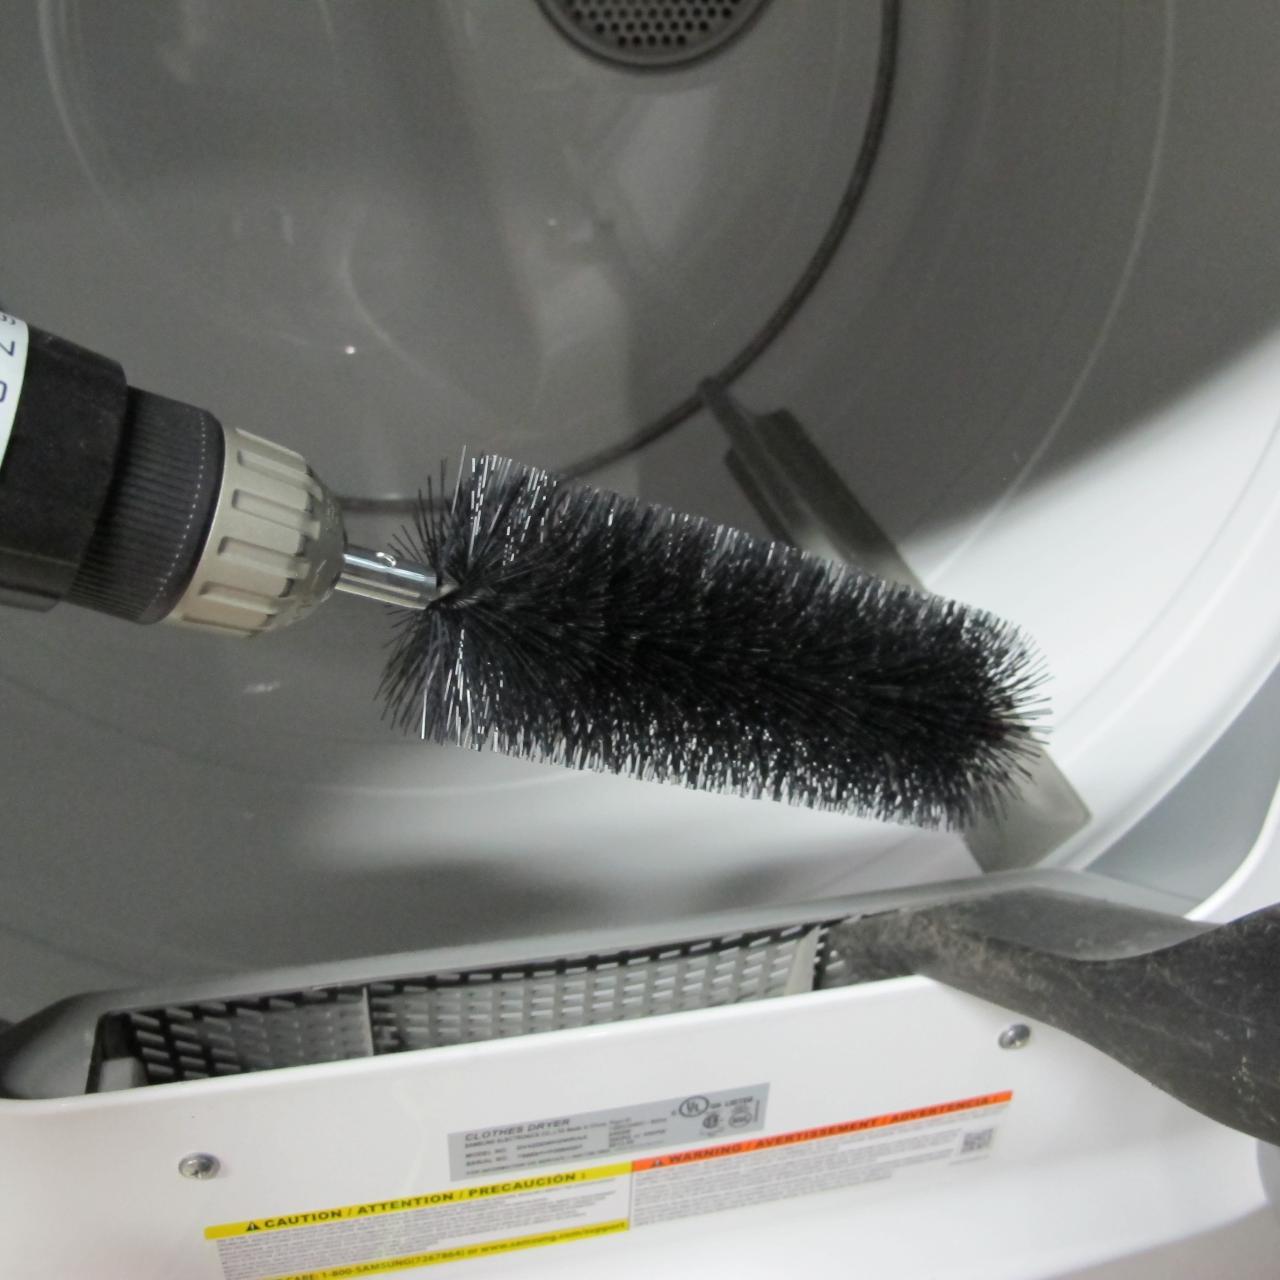 Radiator Brush Long Flexible Dryer Cleaner Vent Brush Refrigerator Coil  Cleaning Brush